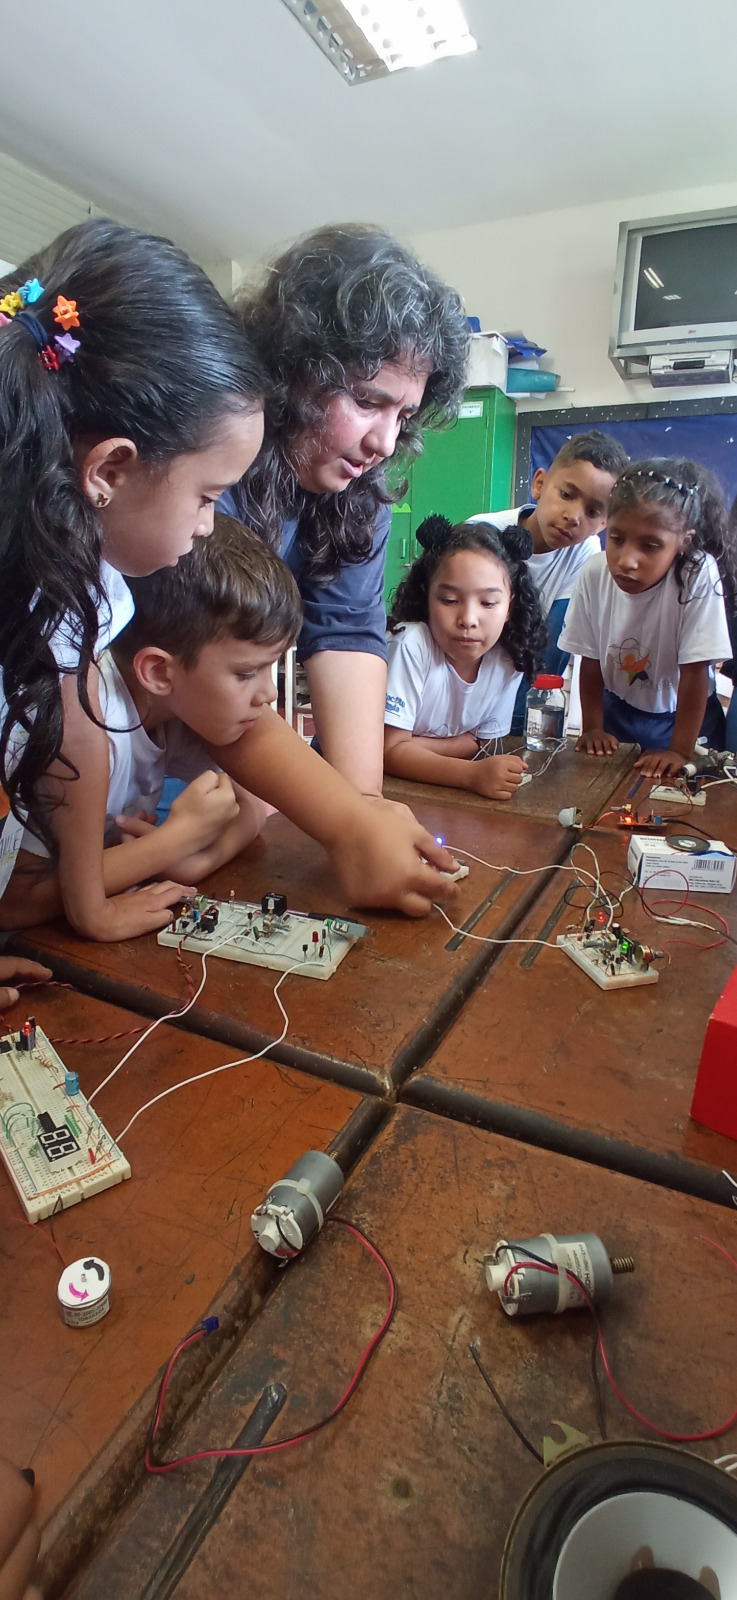 Ruta Científica promueve enseñanza de la química y electrónica en Miranda